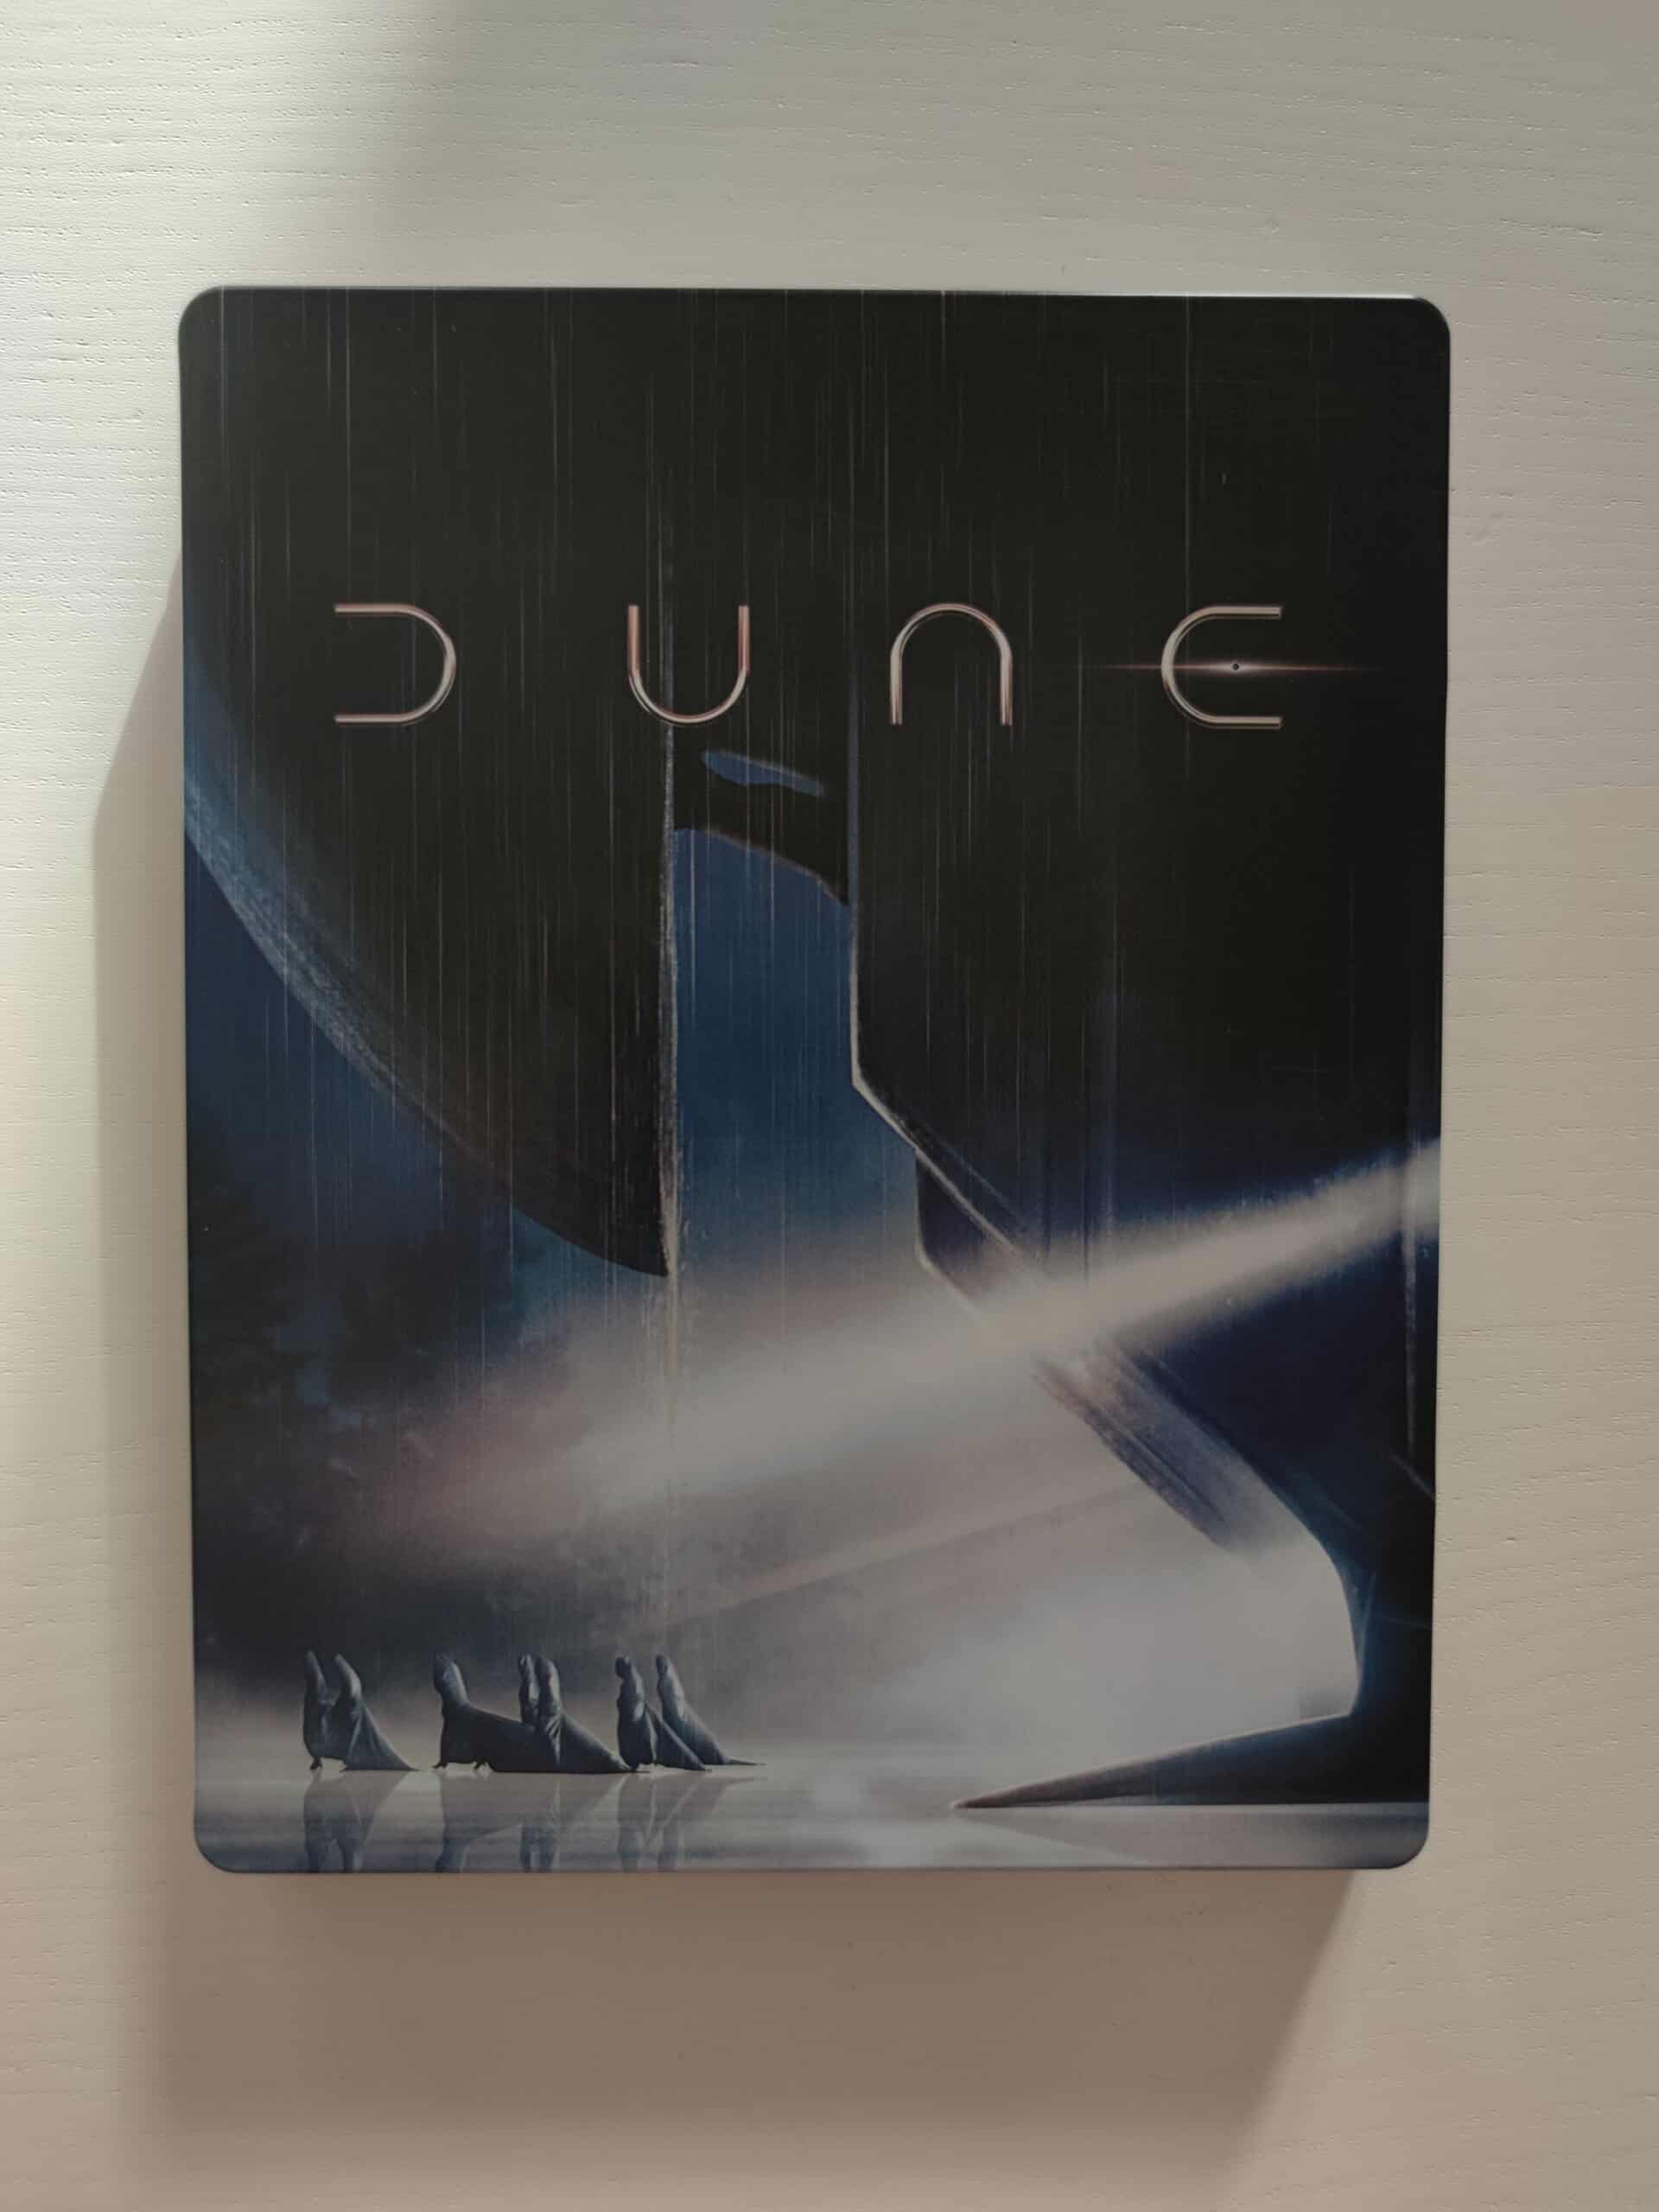 [Review] DUNE 4K UHD Steelbook (inkl. Blu-Ray)